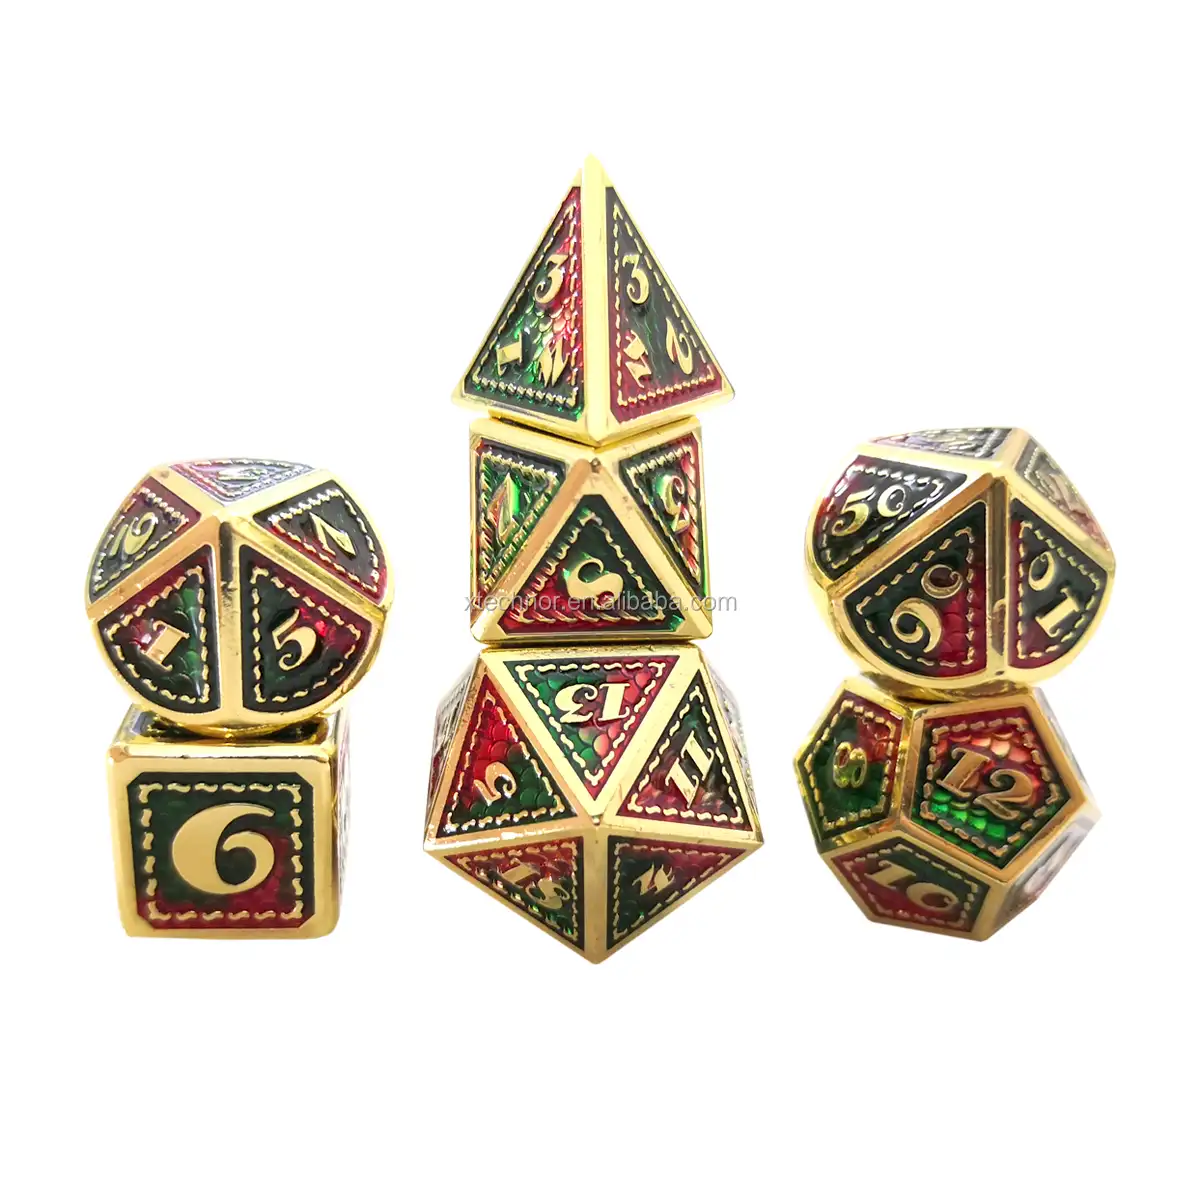 Dadi in metallo stile drago personalizzato colorato verde rosso Design numero oro poliedrico DND dadi set per Dungeons And Dragons gioco D & D